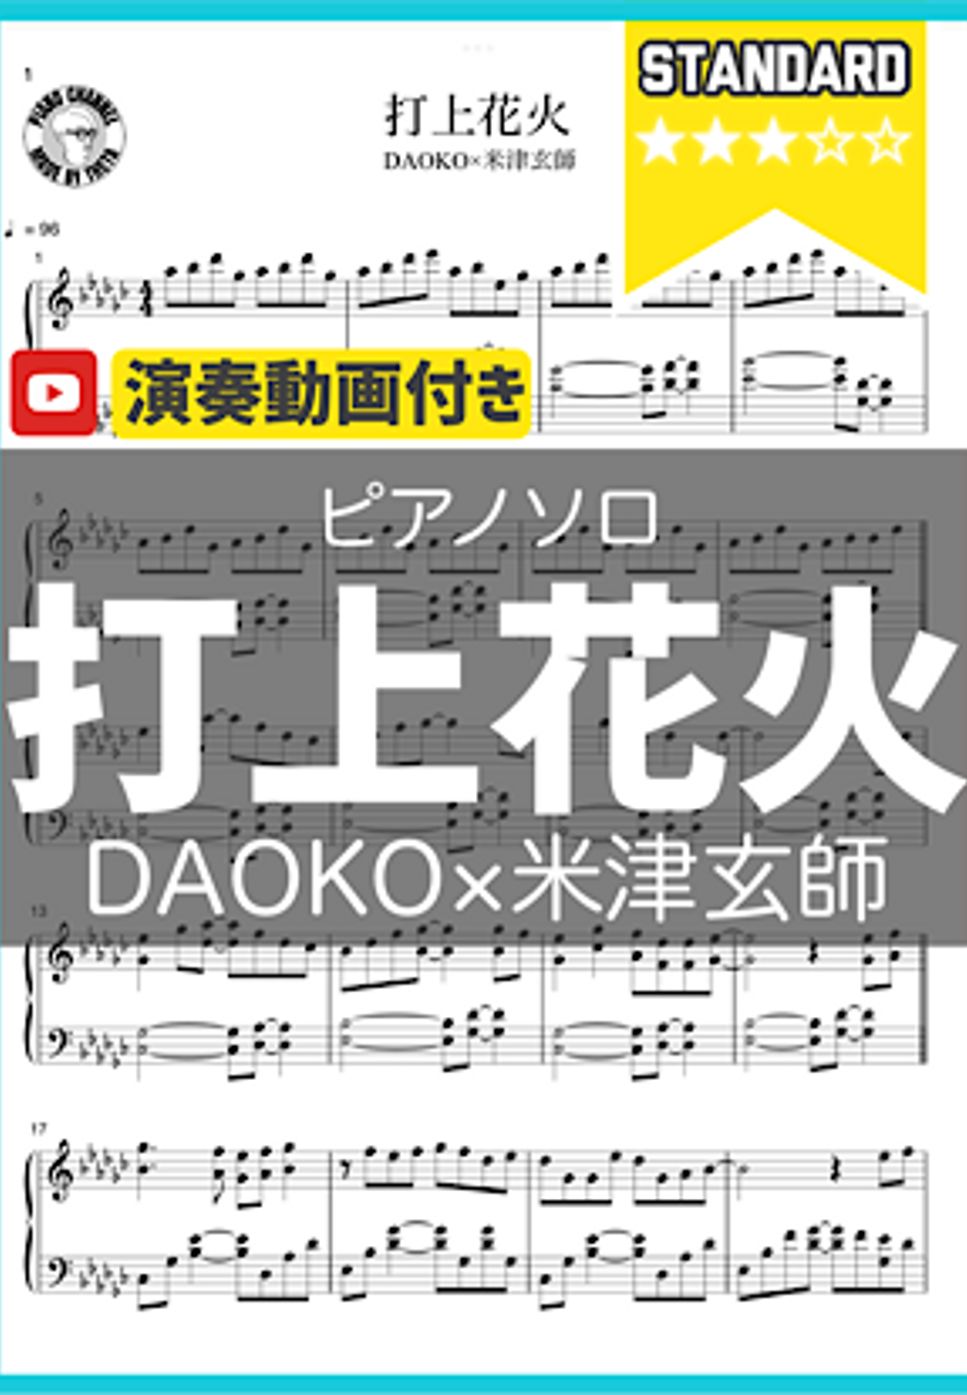 DAOKO×米津玄師 - 打上花火 by シータピアノ